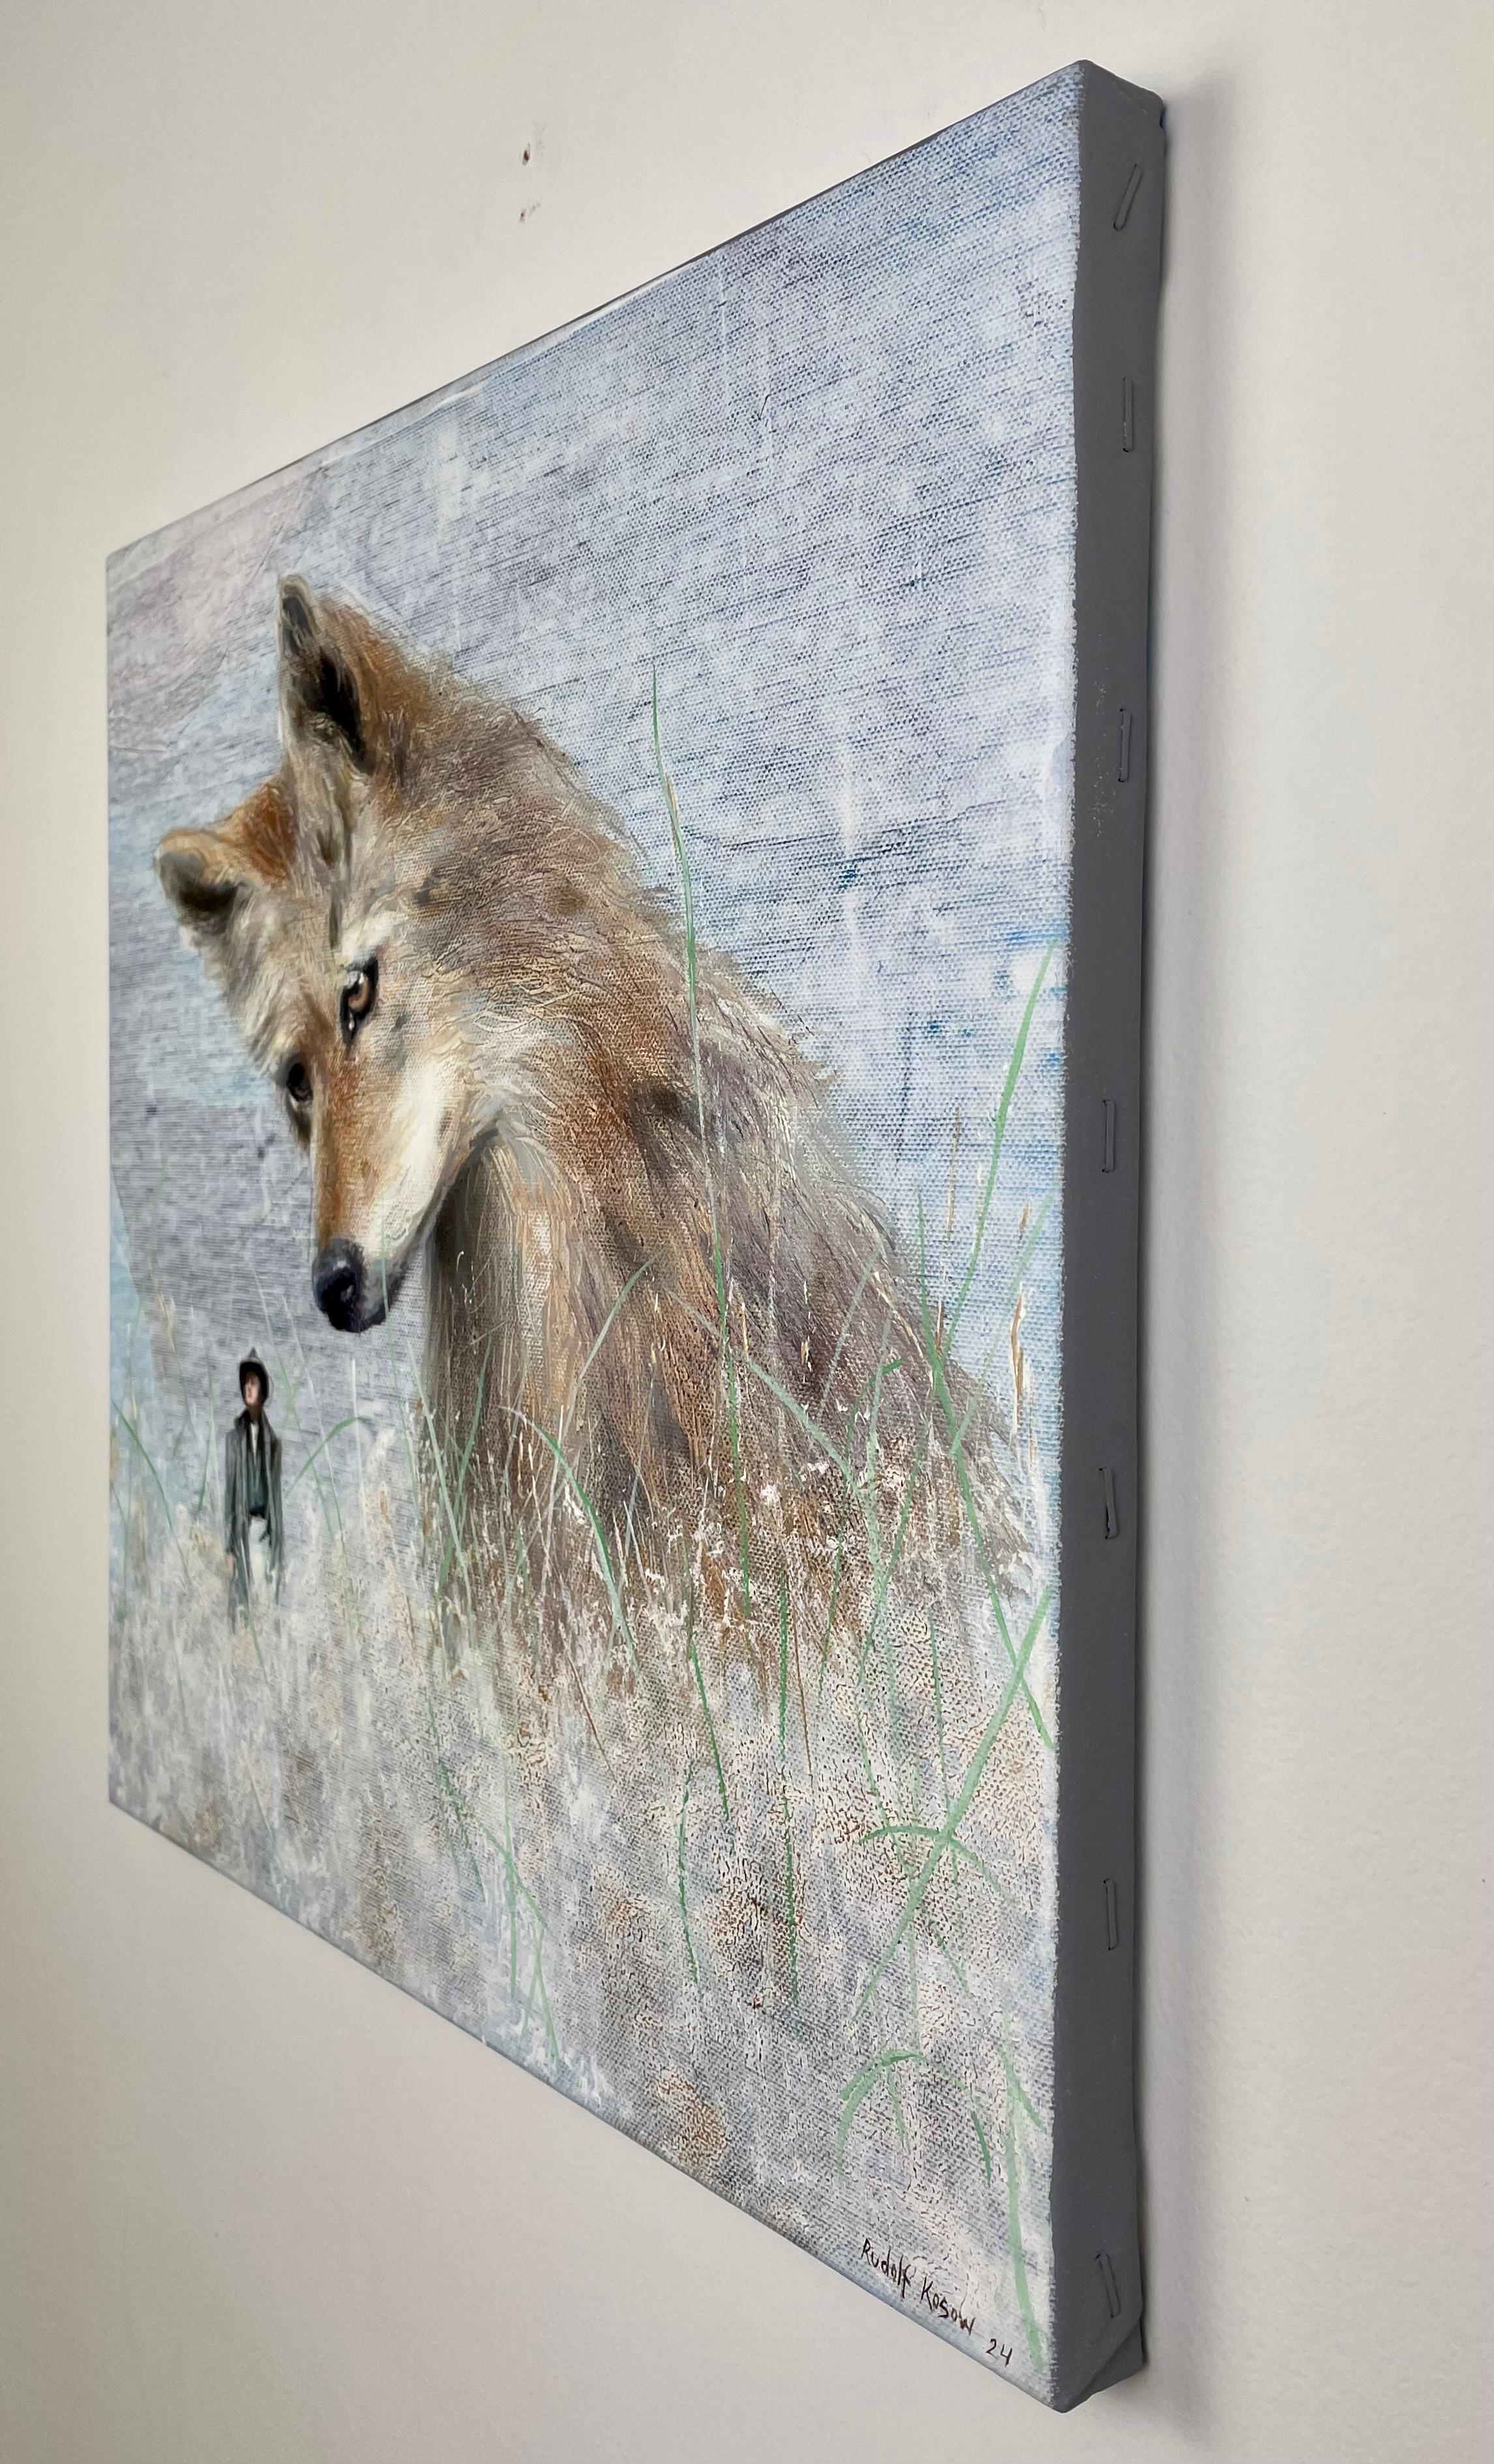 Baddie (Kojote, Mensch, wildes Tier, americana, surrealistische Malerei, Natur, Feld) (Surrealismus), Painting, von Rudolf Kosow